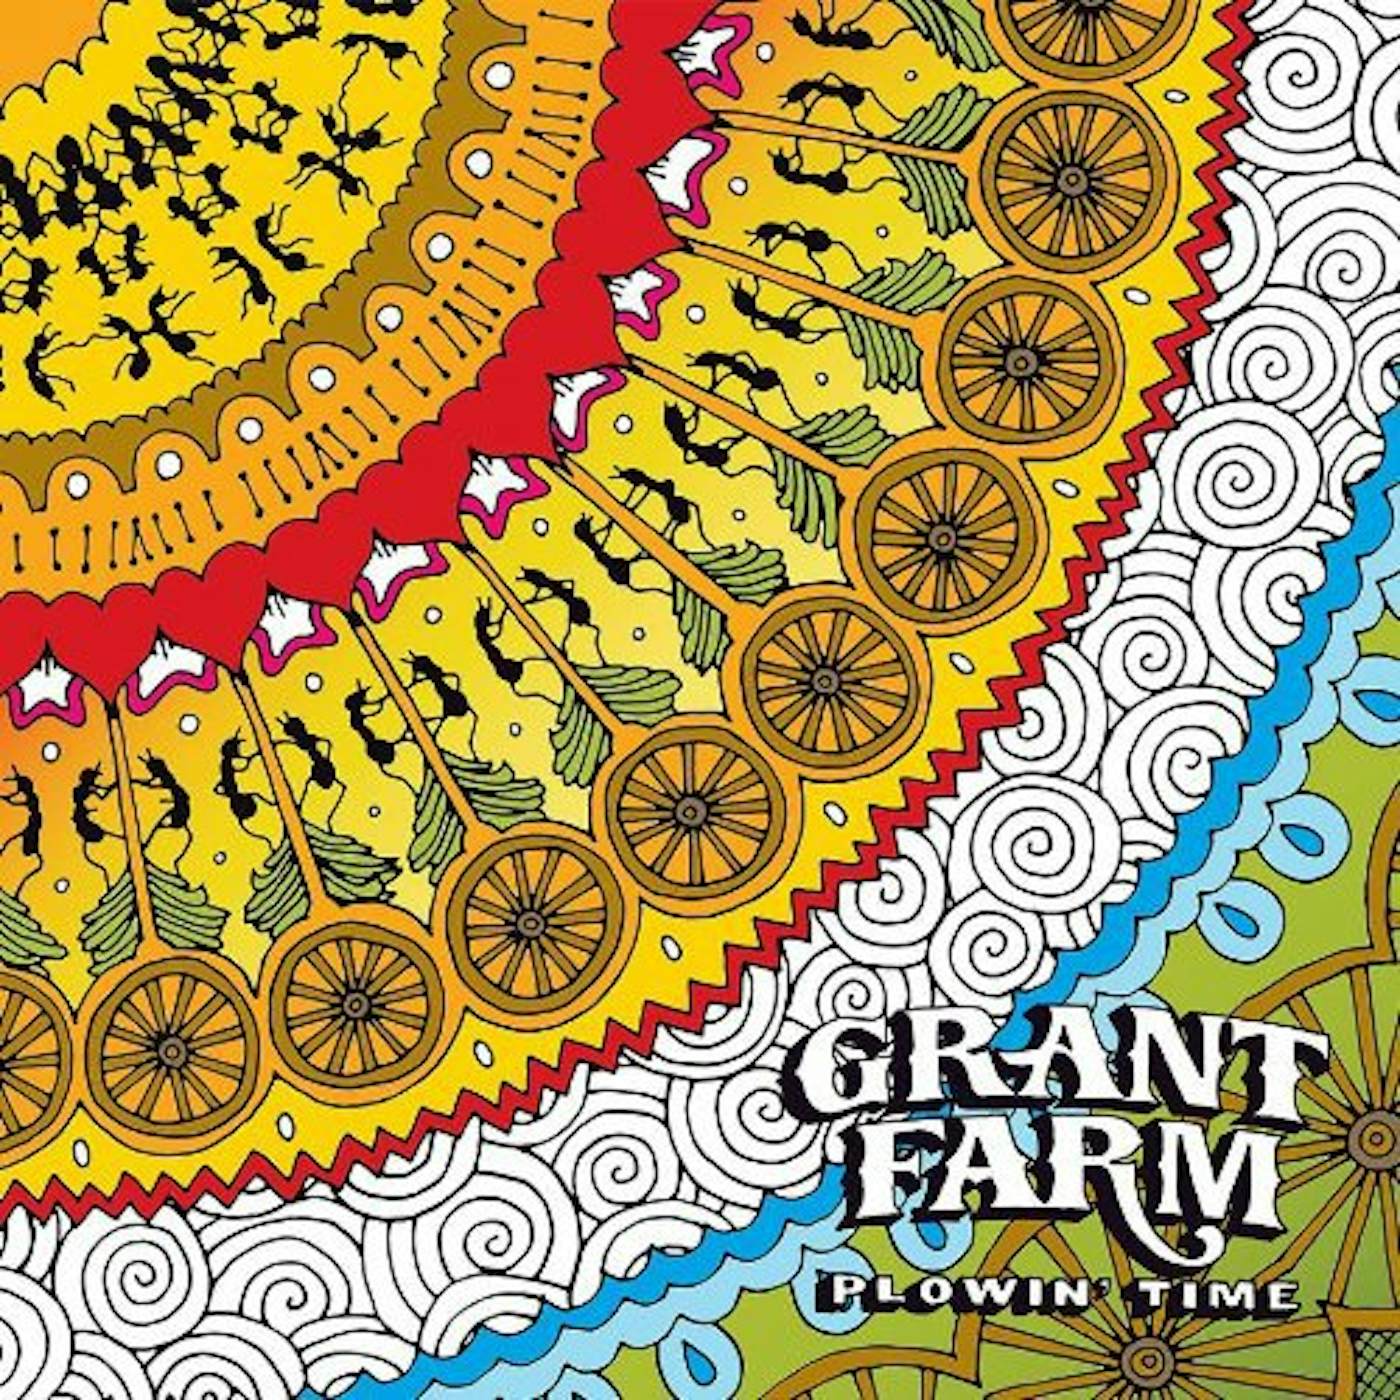 Grant Farm Plowin' Time Vinyl Record